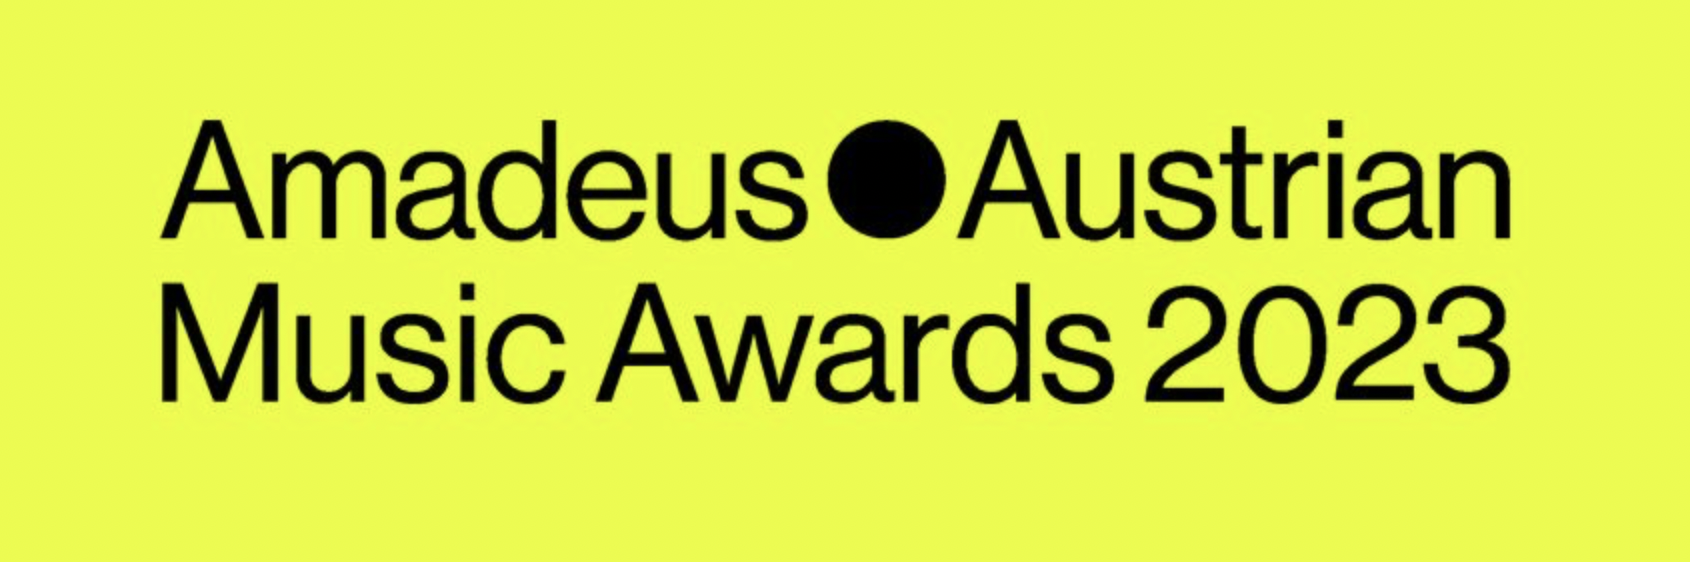 Amadeus Austrian Music Awards 2023 am 28. April 2023 @ Volkstheater Wien.